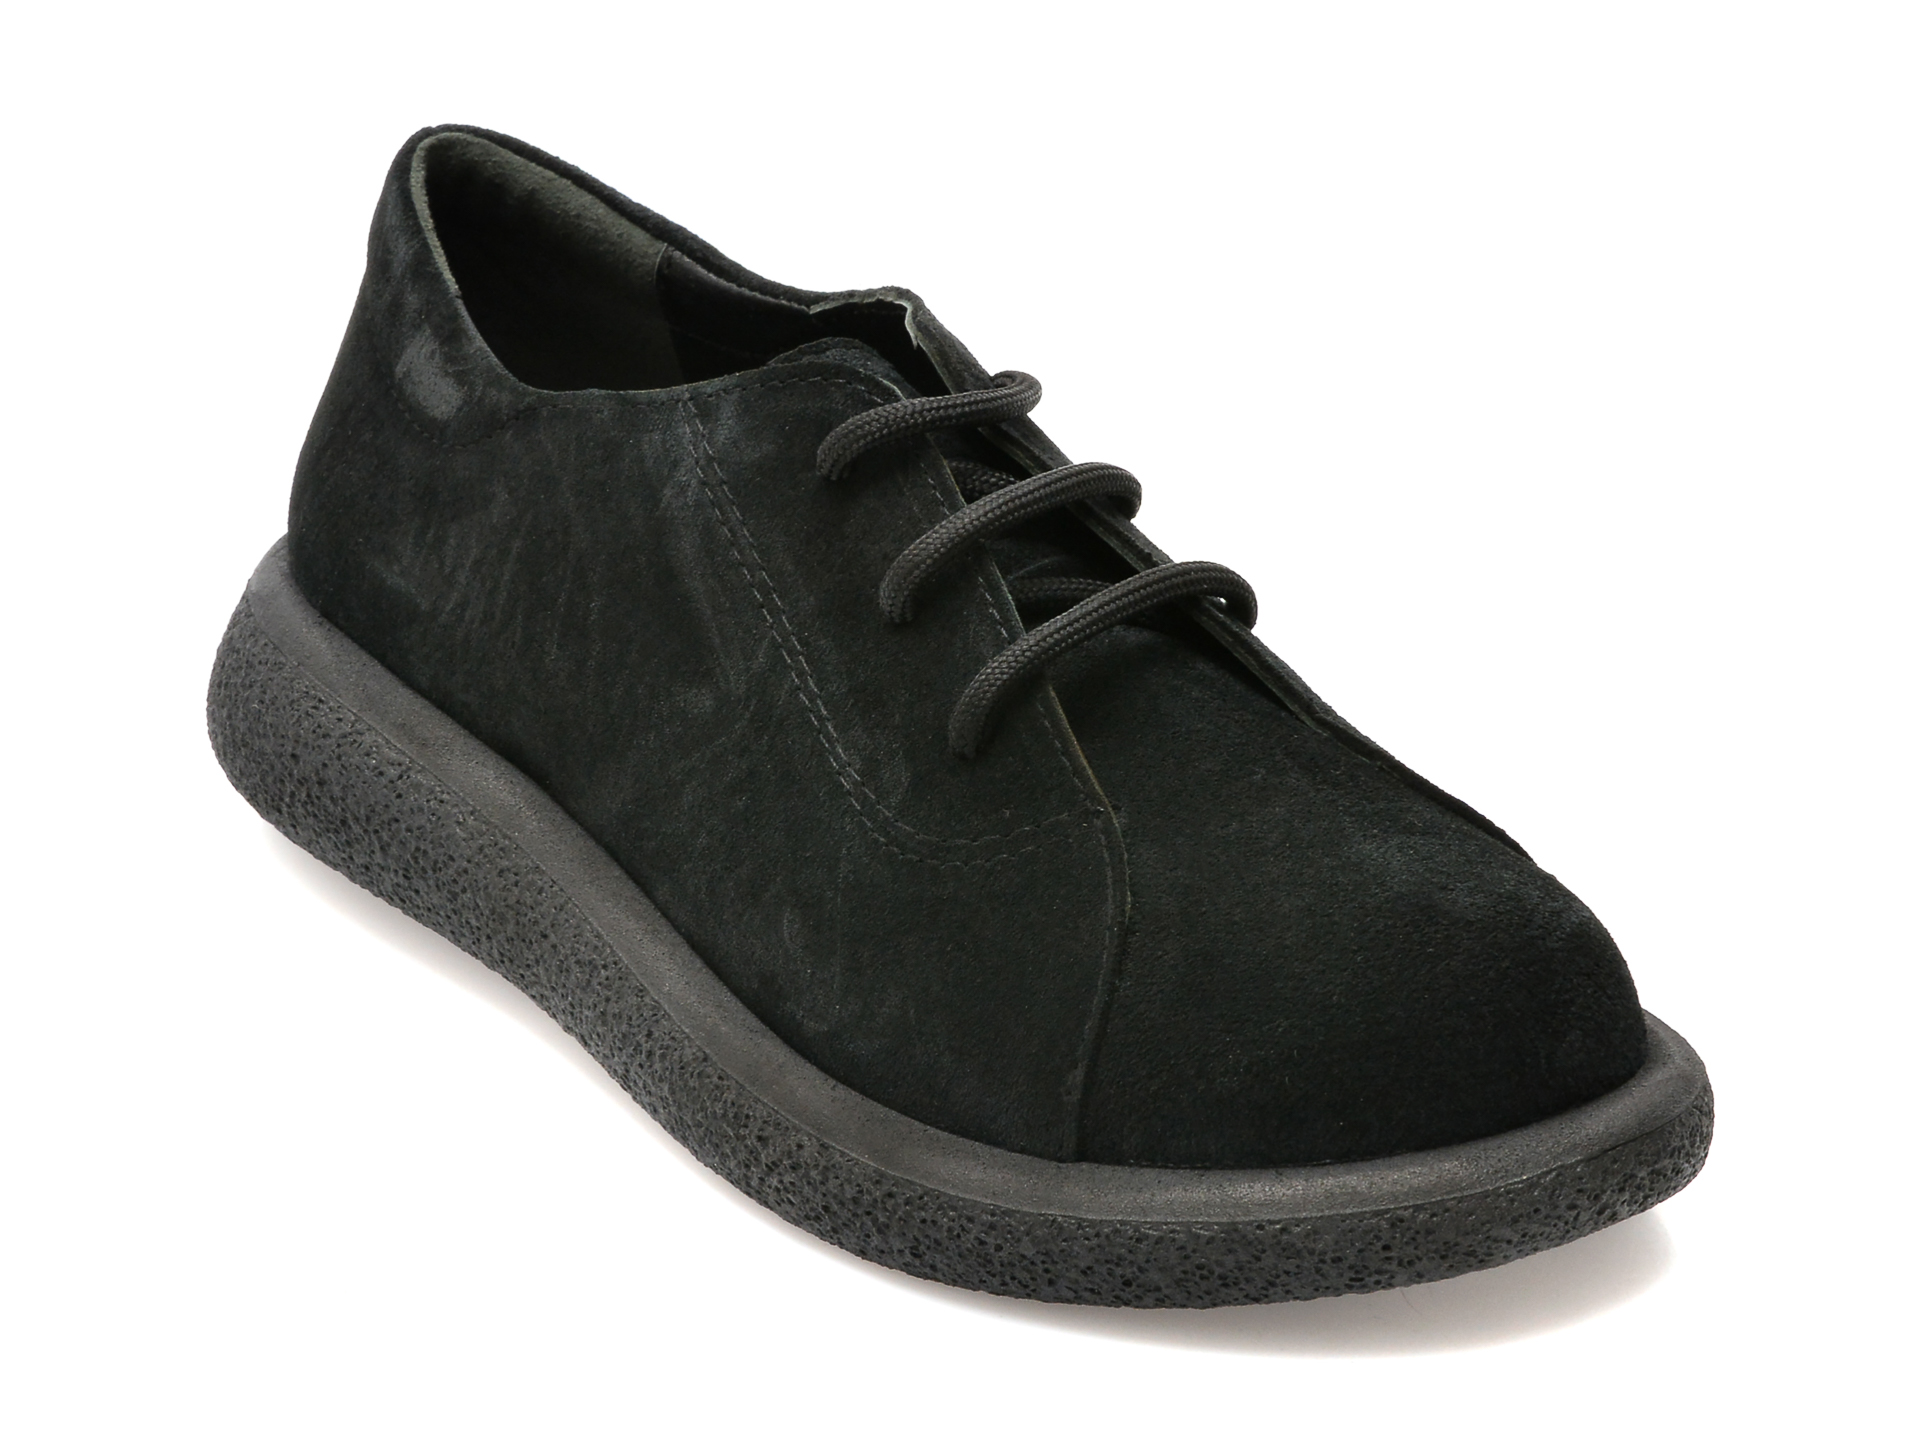 Pantofi FLAVIA PASSINI negri, 105, din piele intoarsa femei 2023-03-20